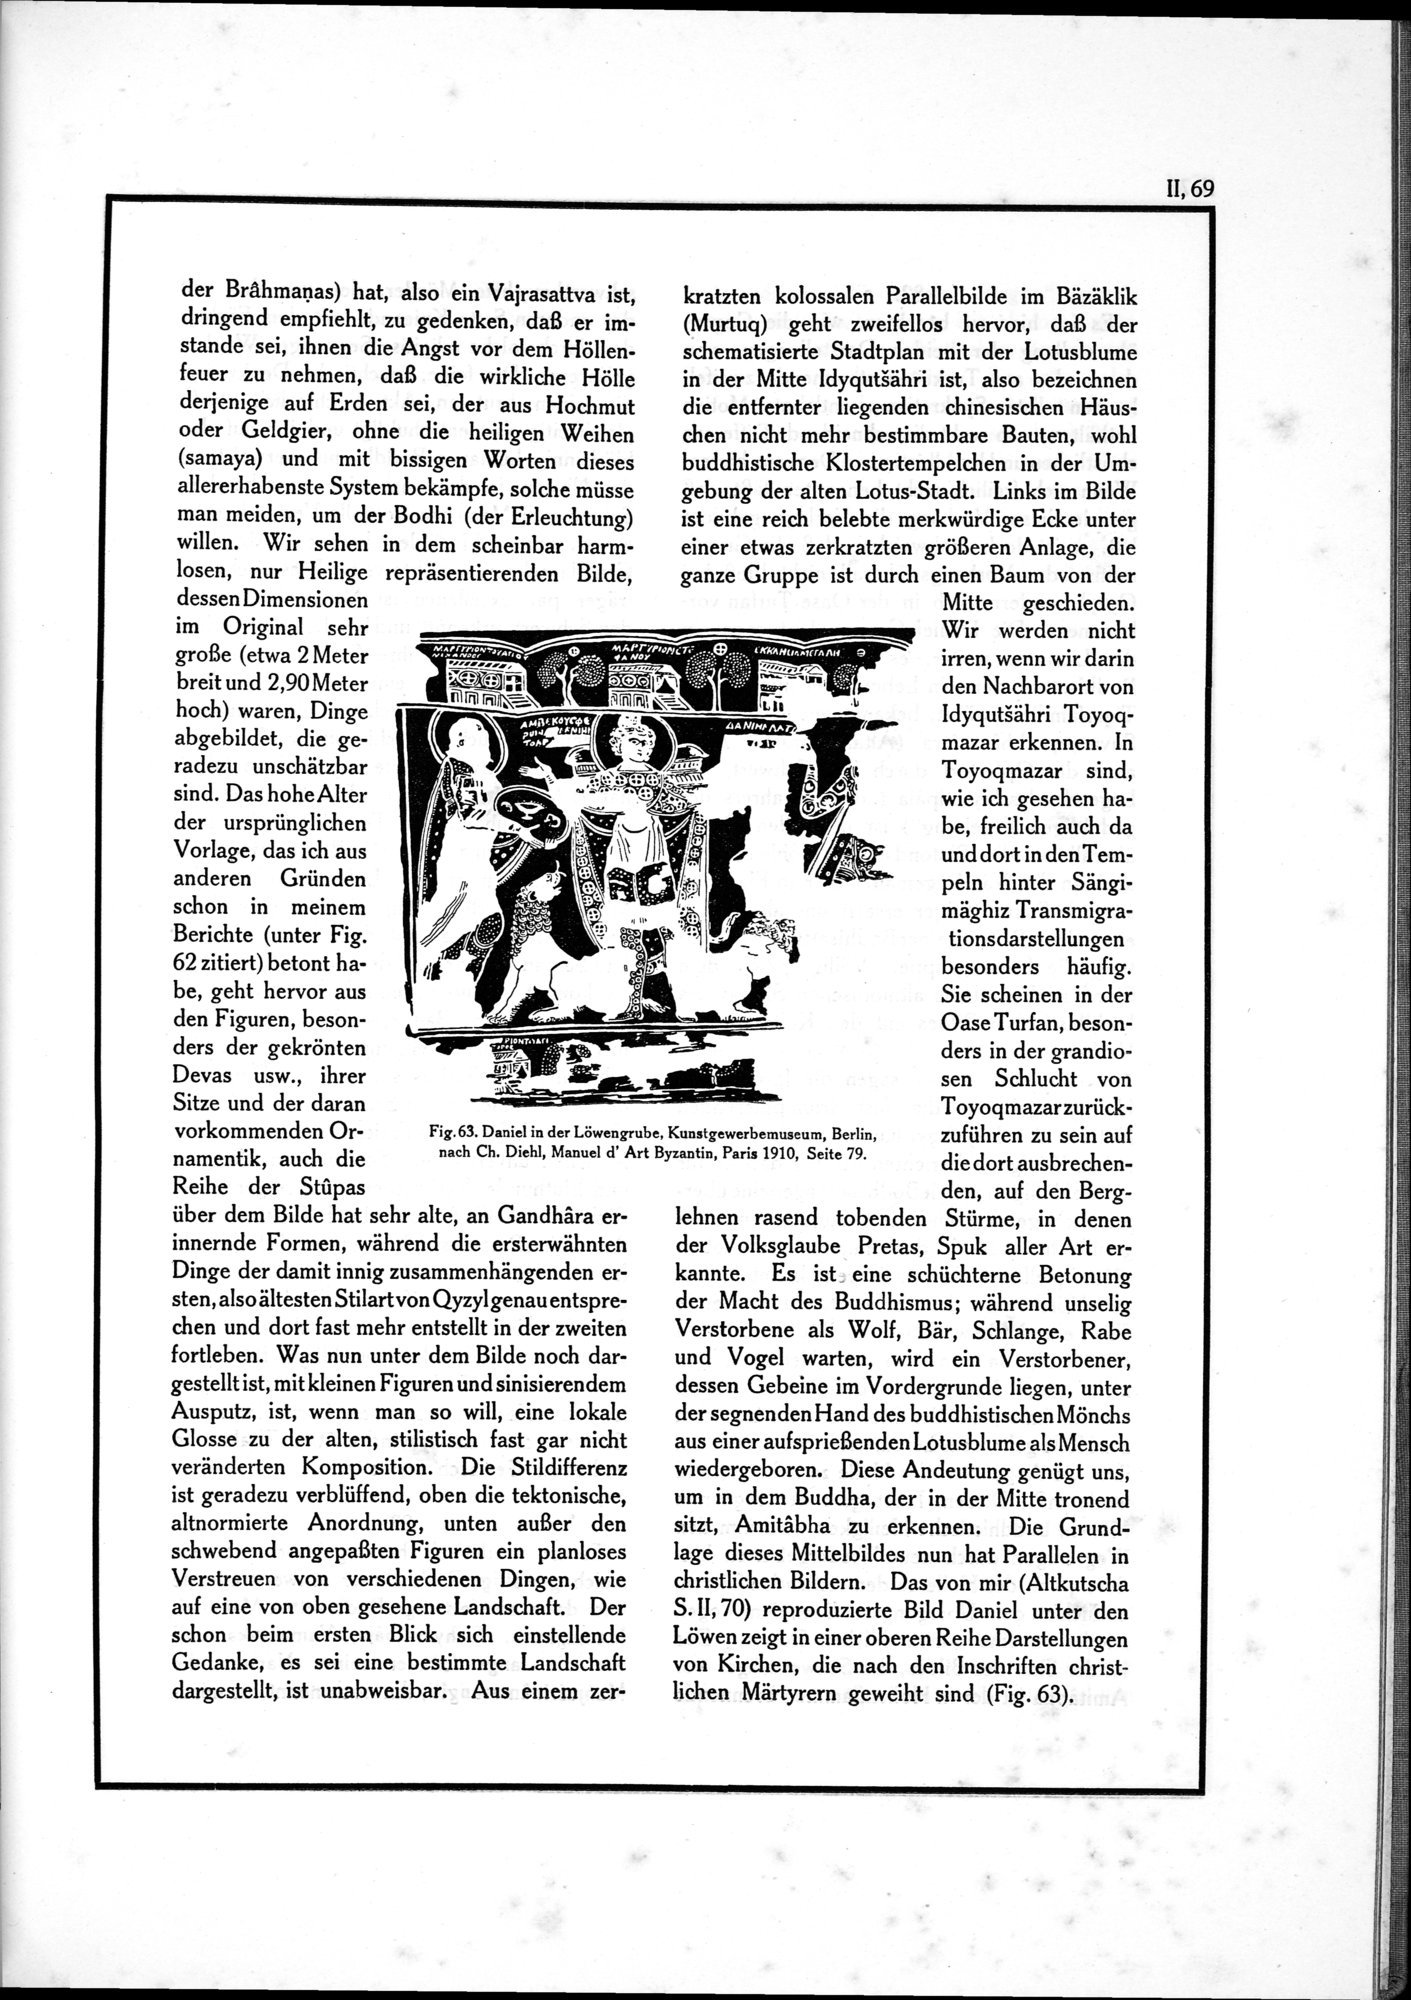 Die Teufel des Avesta und Ihre Beziehungen zur Ikonographie des Buddhismus Zentral-Asiens : vol.1 / Page 525 (Grayscale High Resolution Image)